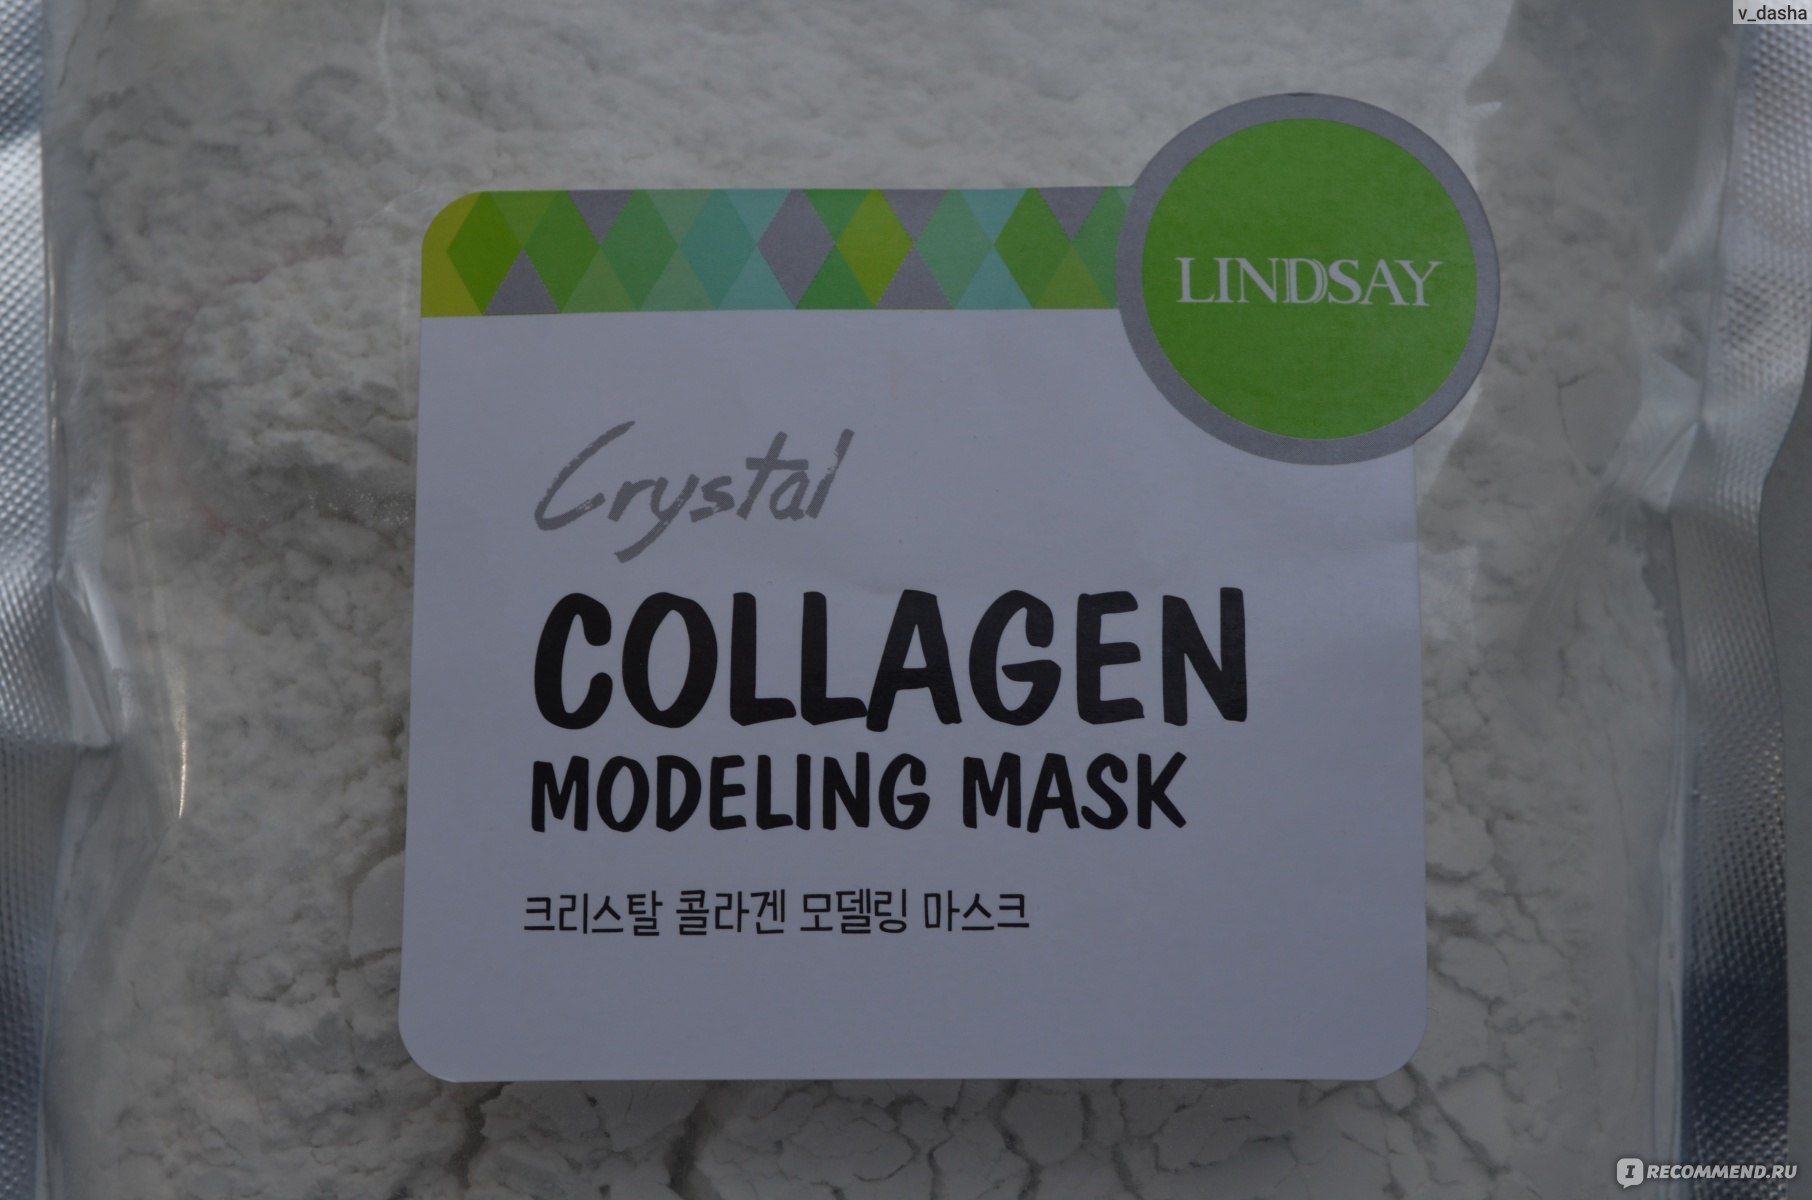 Lindsay COLLAGEN Modeling Mask.